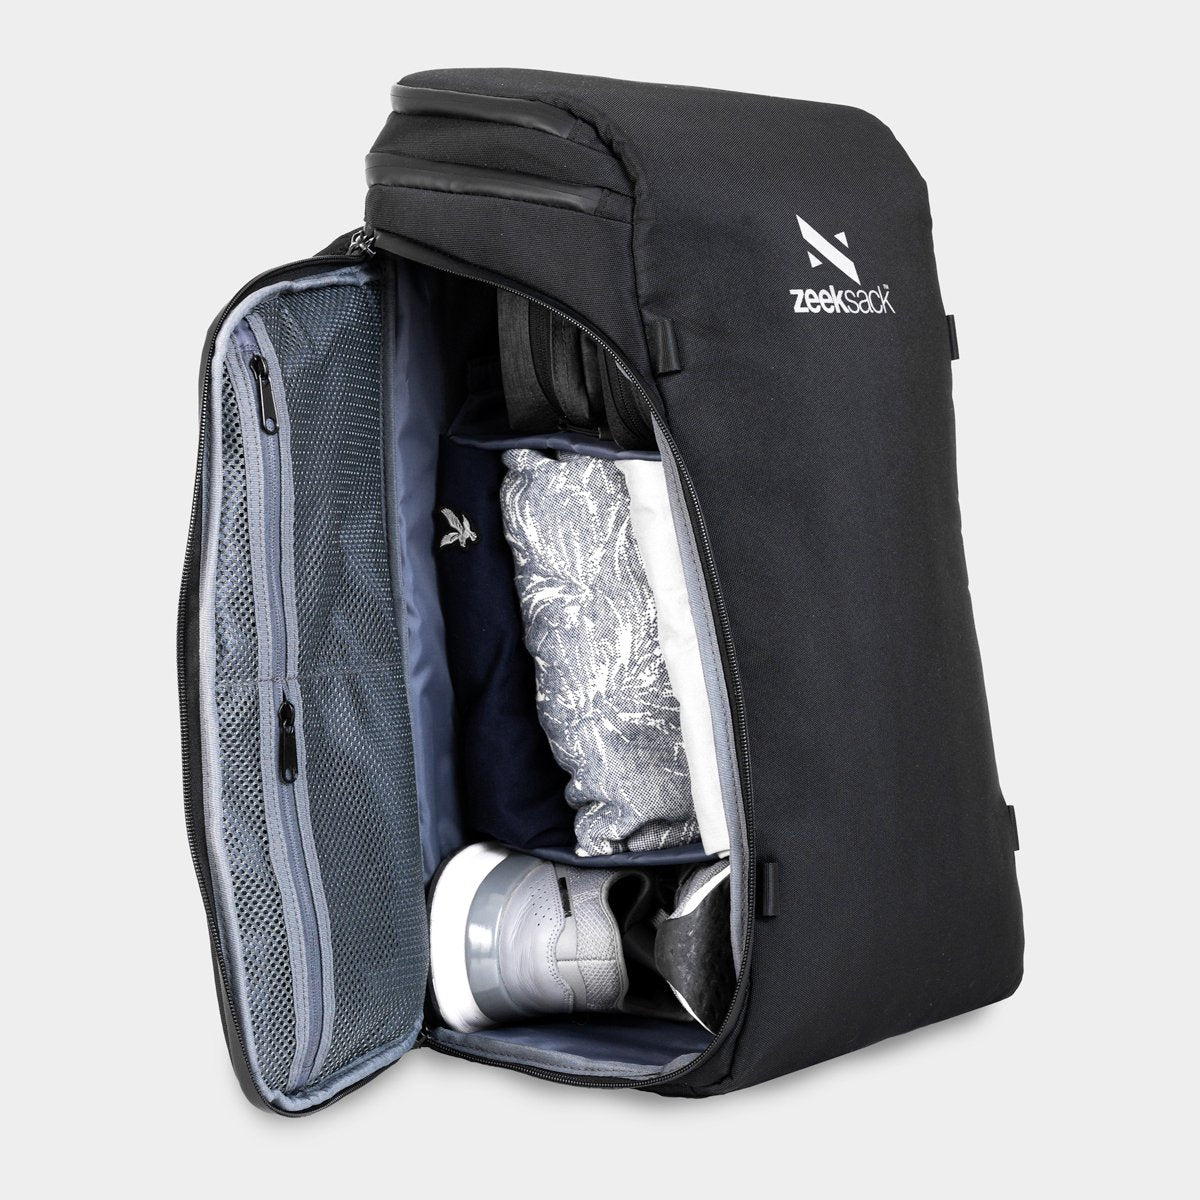 Praktisk ryggsäck med sidoöppning och flyttbara avdelare för en organiserad packning